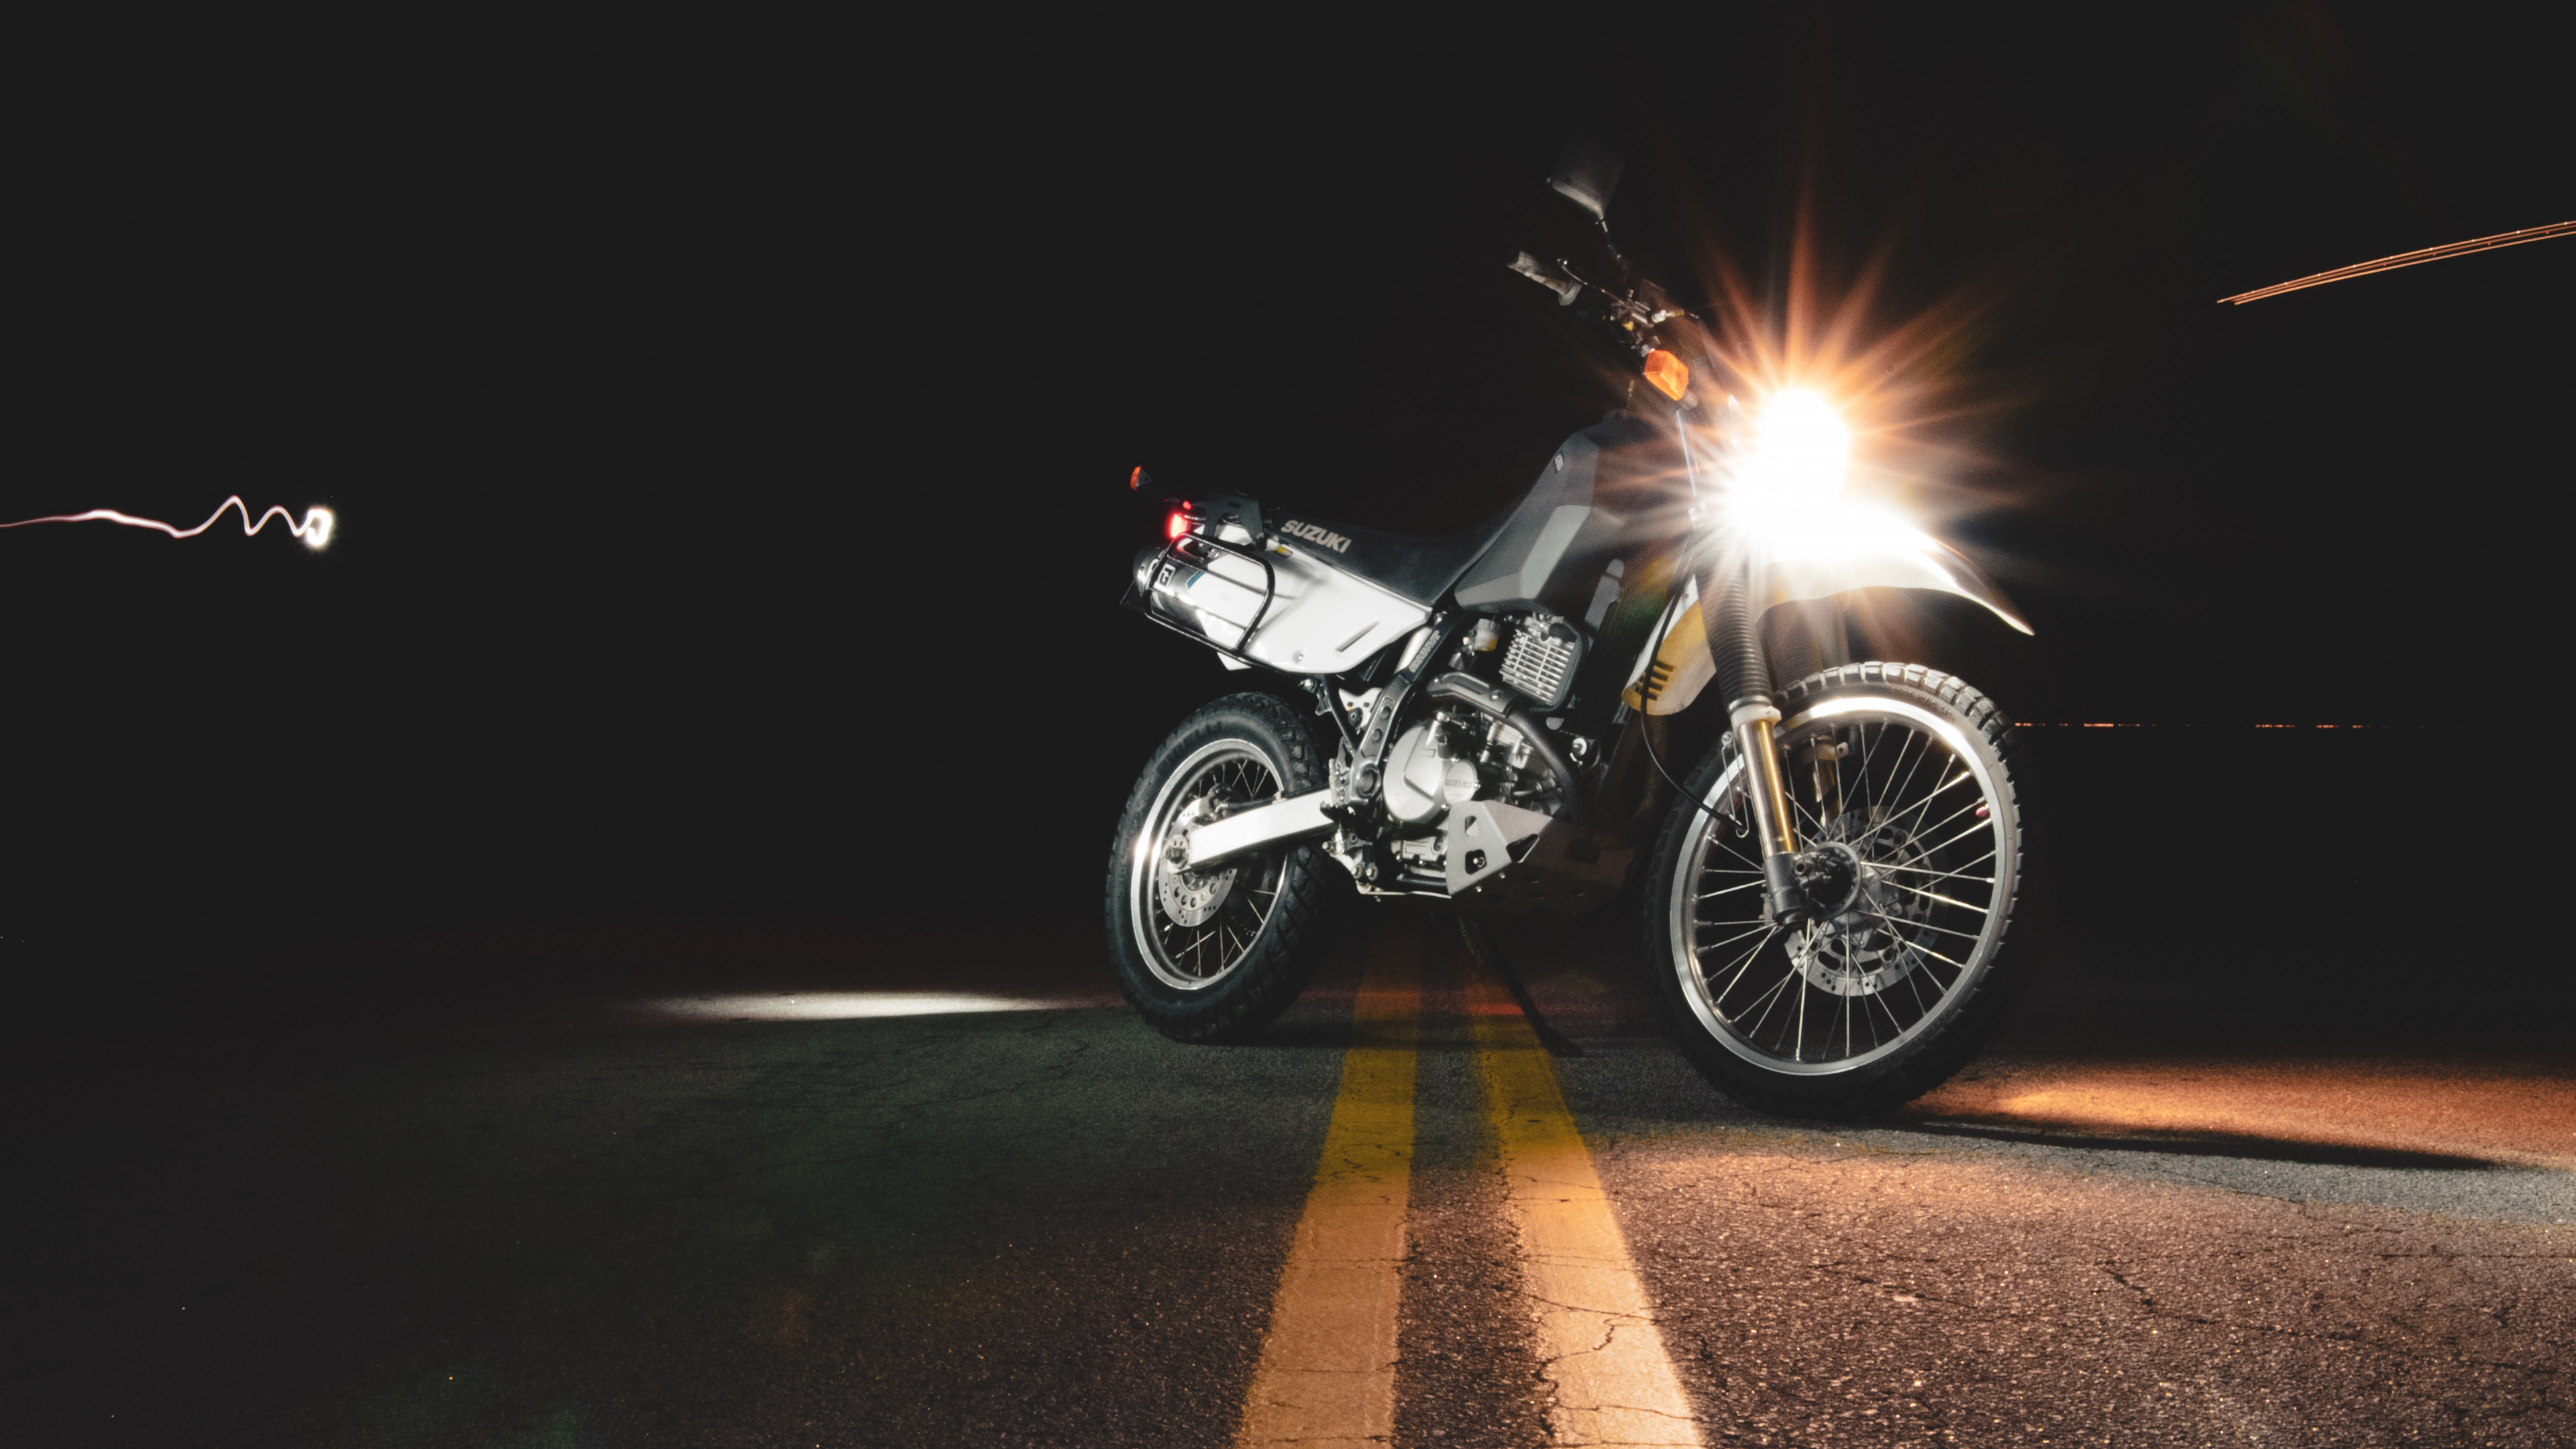 Moto Noir et Argent Sur Route Pendant la Nuit. Wallpaper in 3840x2160 Resolution